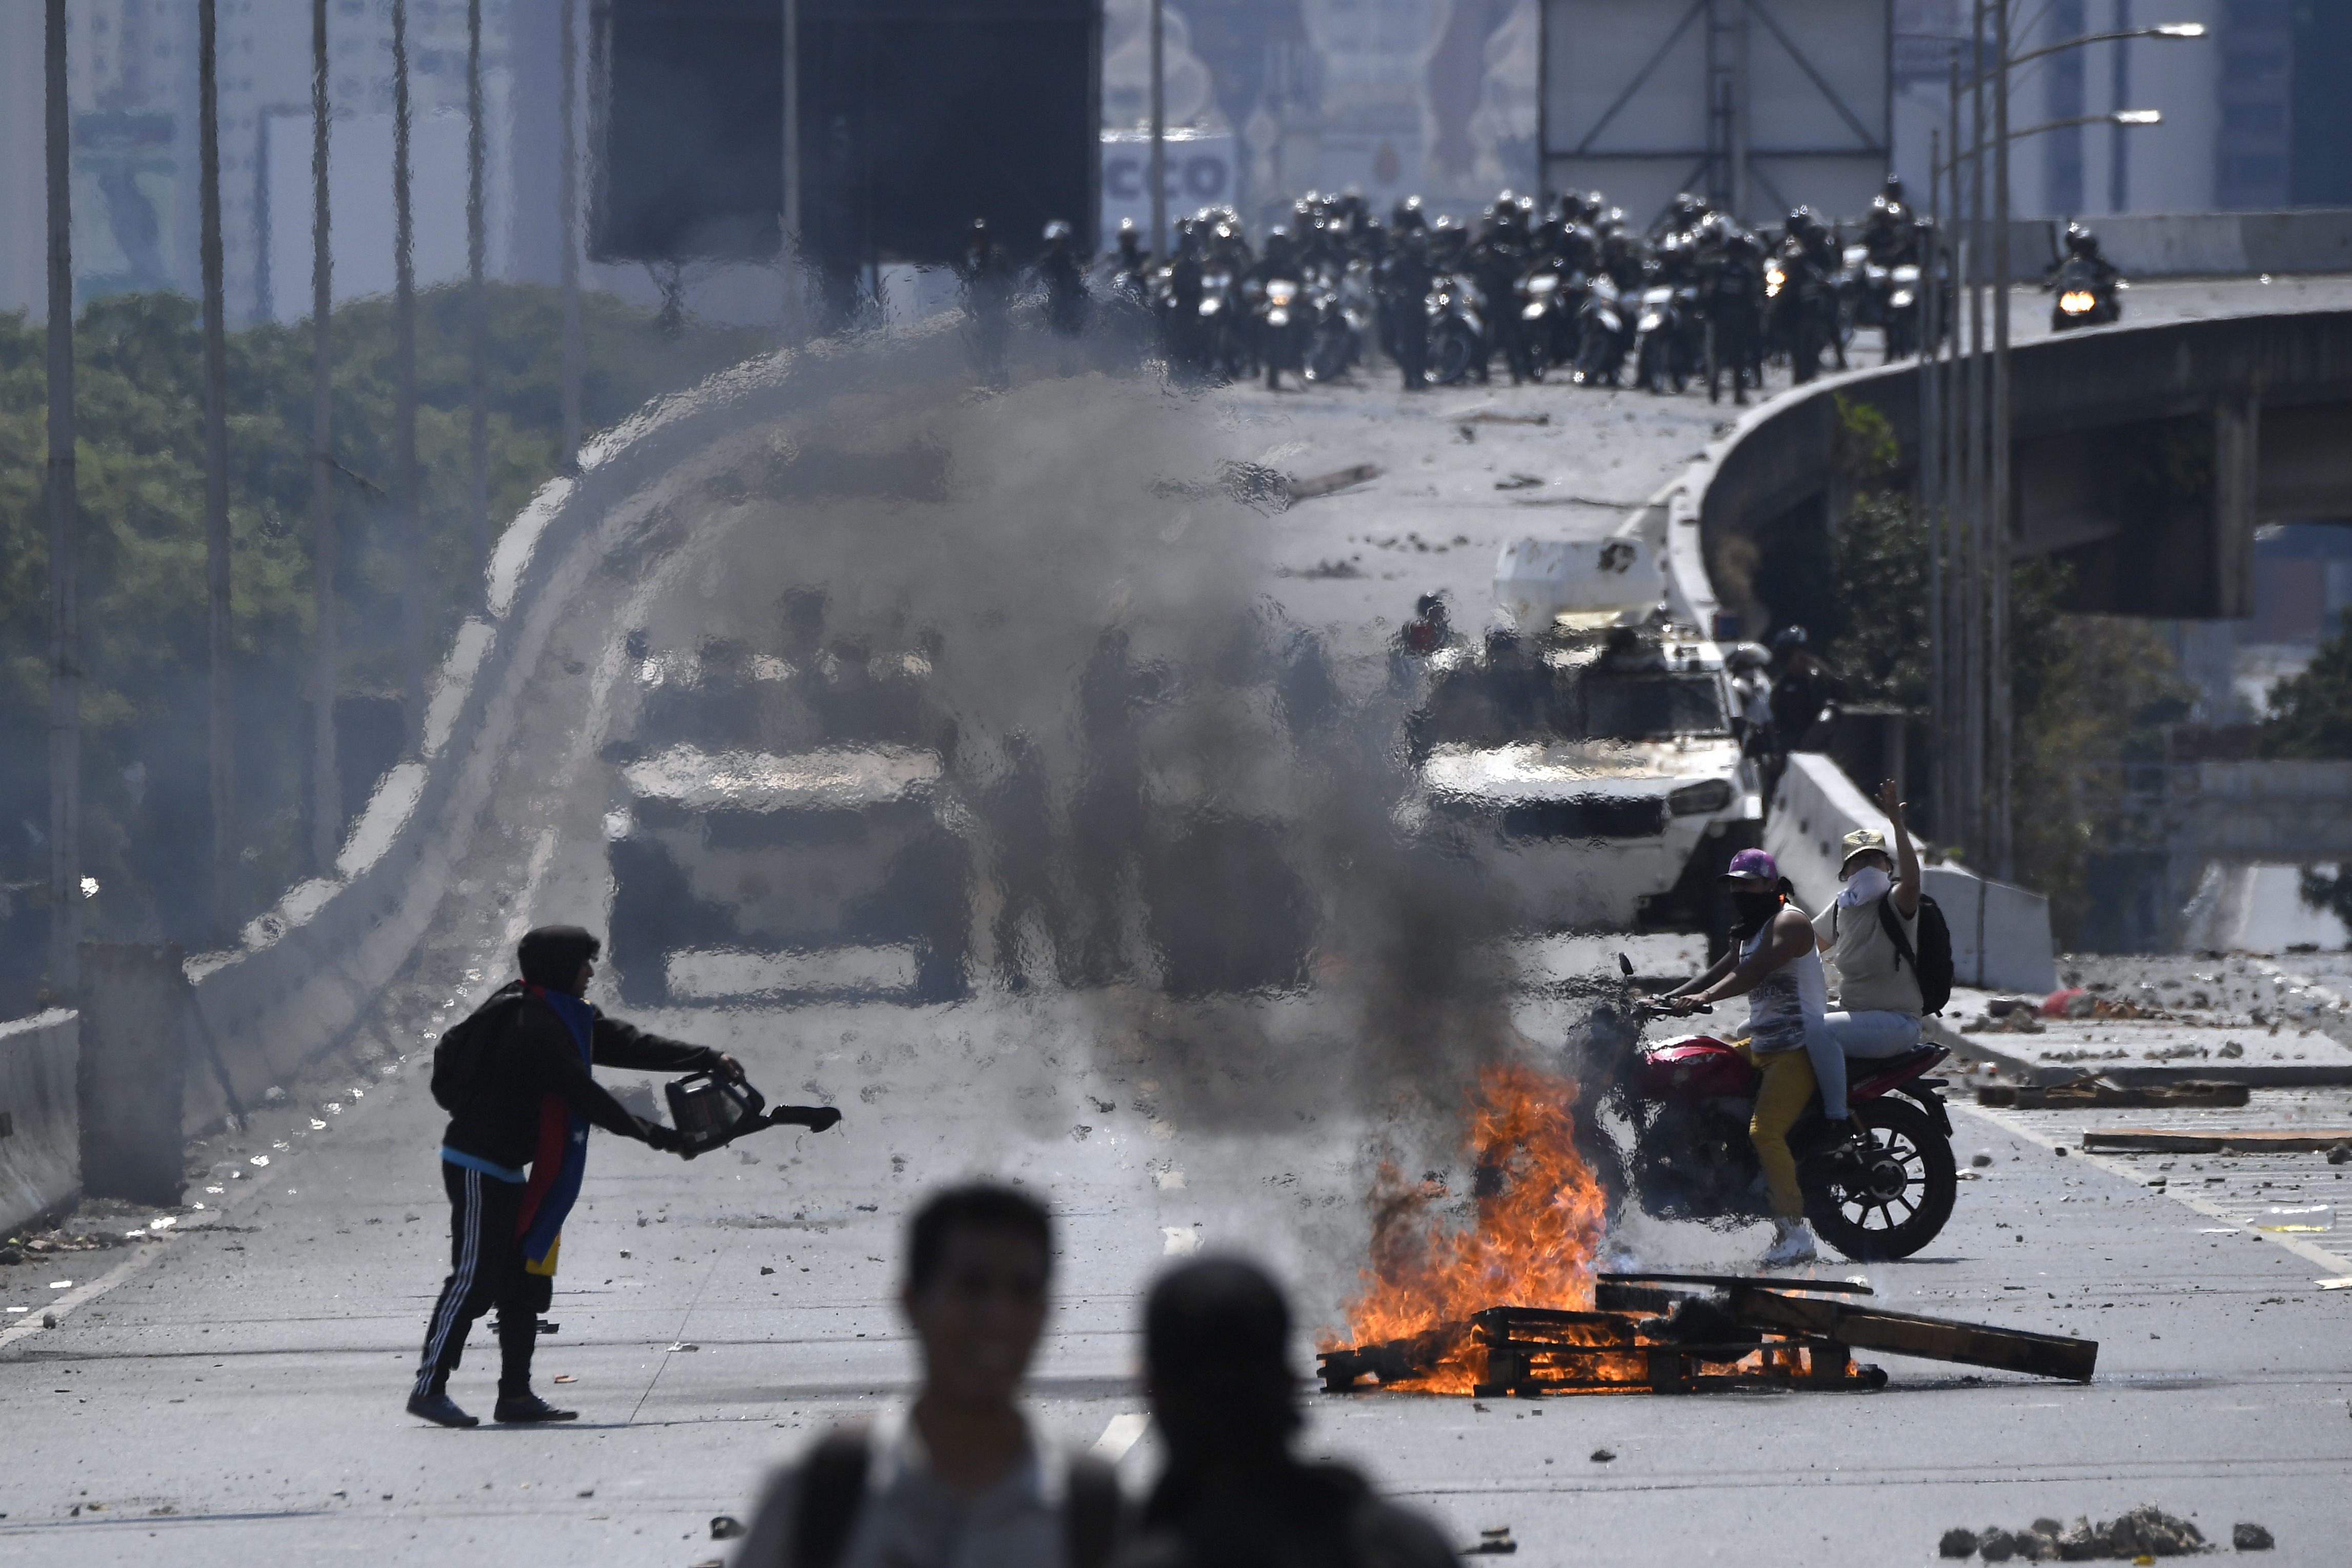 La justicia militar en Venezuela se ejerce arbitrariamente